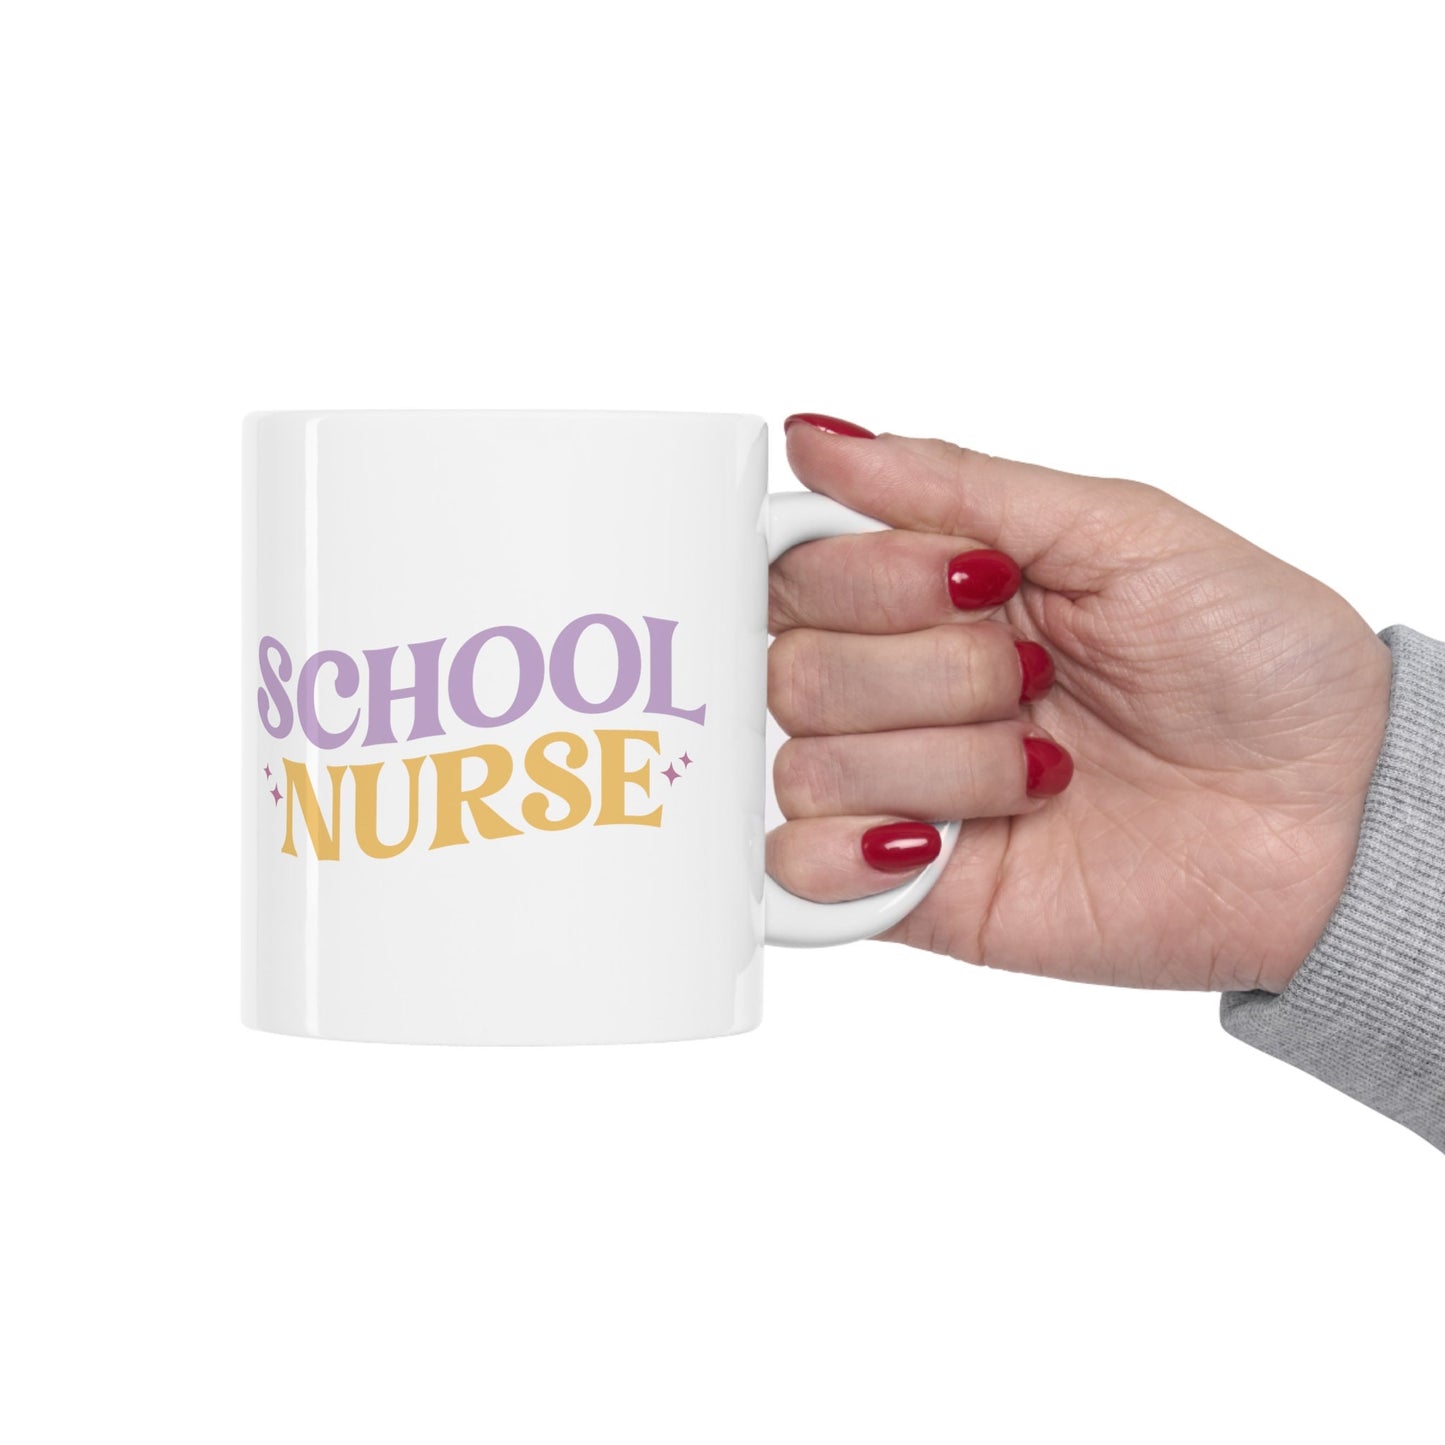 School Nurse Nursing Mug, I love nurses Mug, Awesome gift Mug for nurses, gift Mug for a special nurse, Thank you gift Mug for nurses